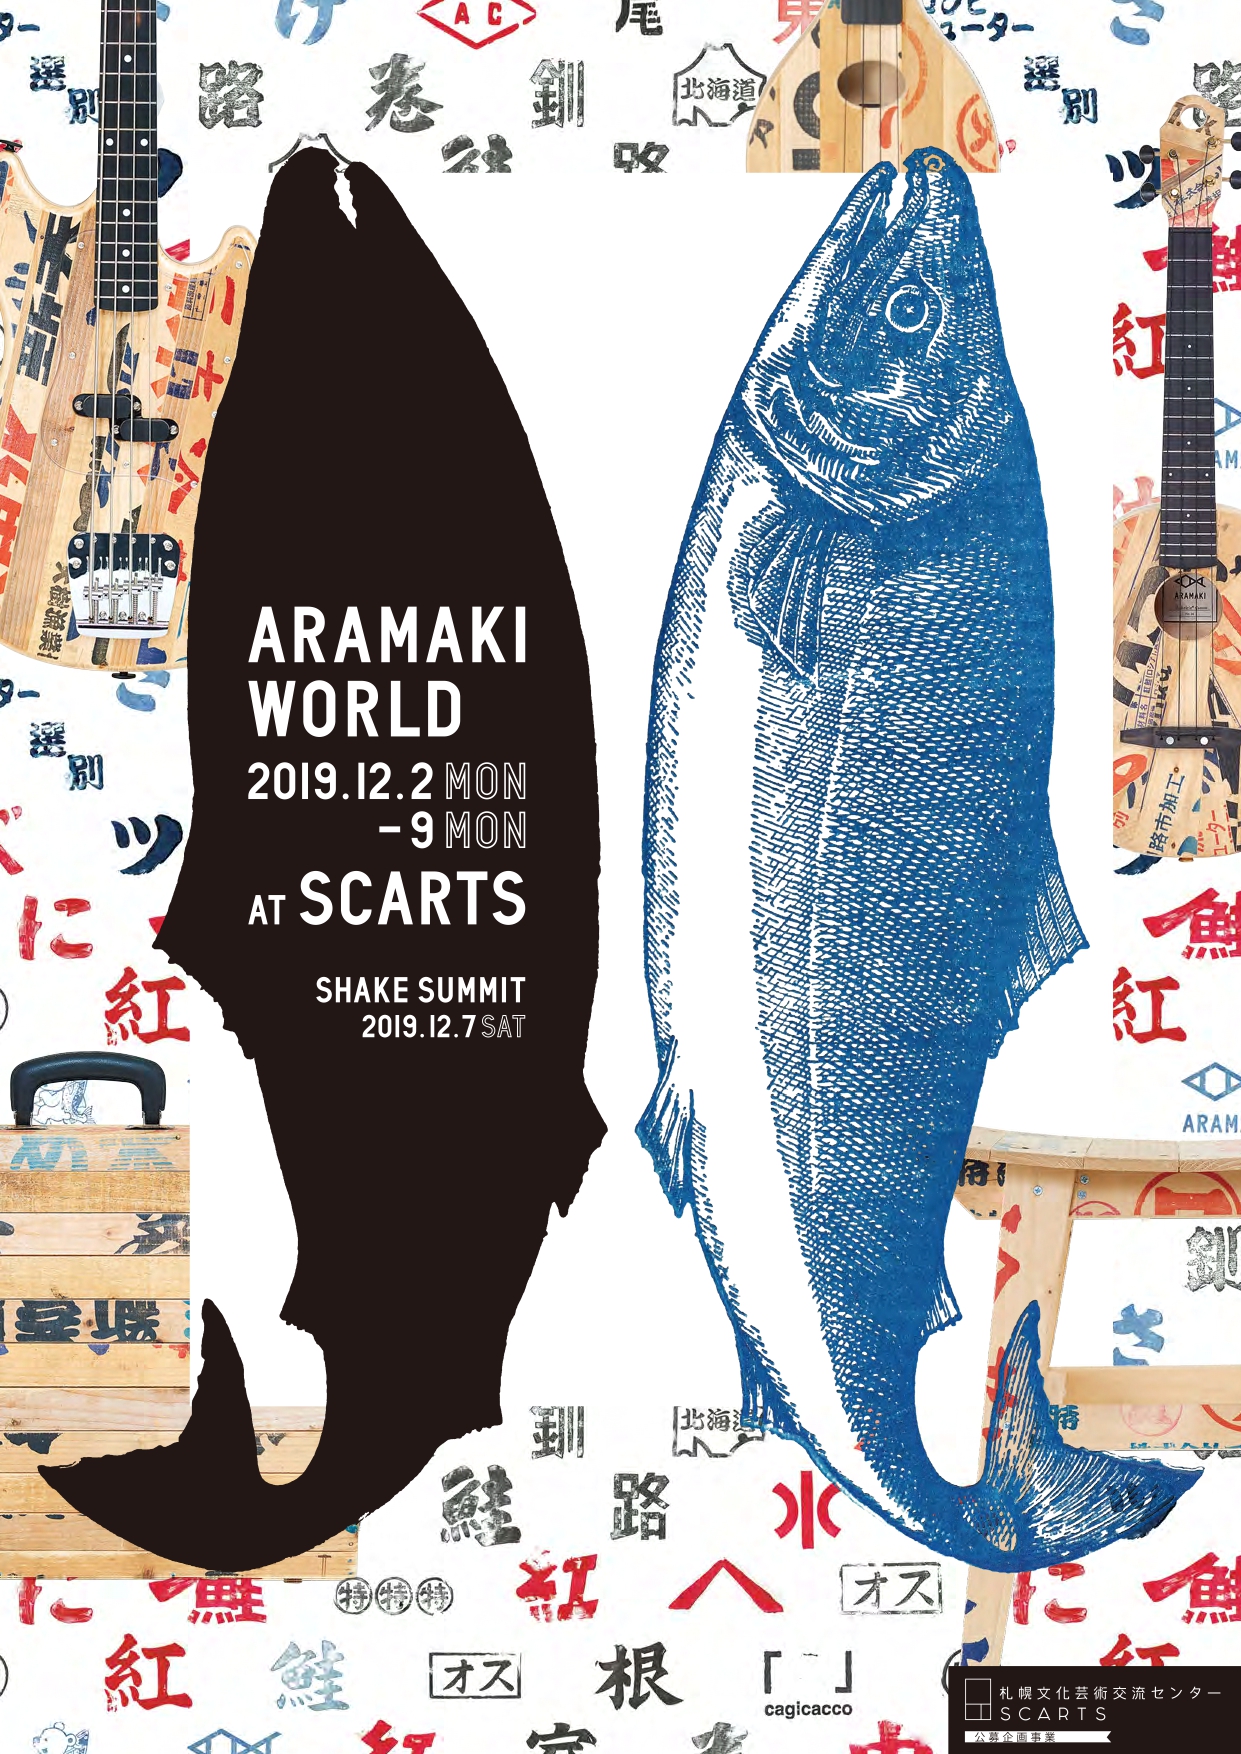 SCARTS公募企画事業「ARAMAKI WORLD + SHAKE SUMMIT」イメージ